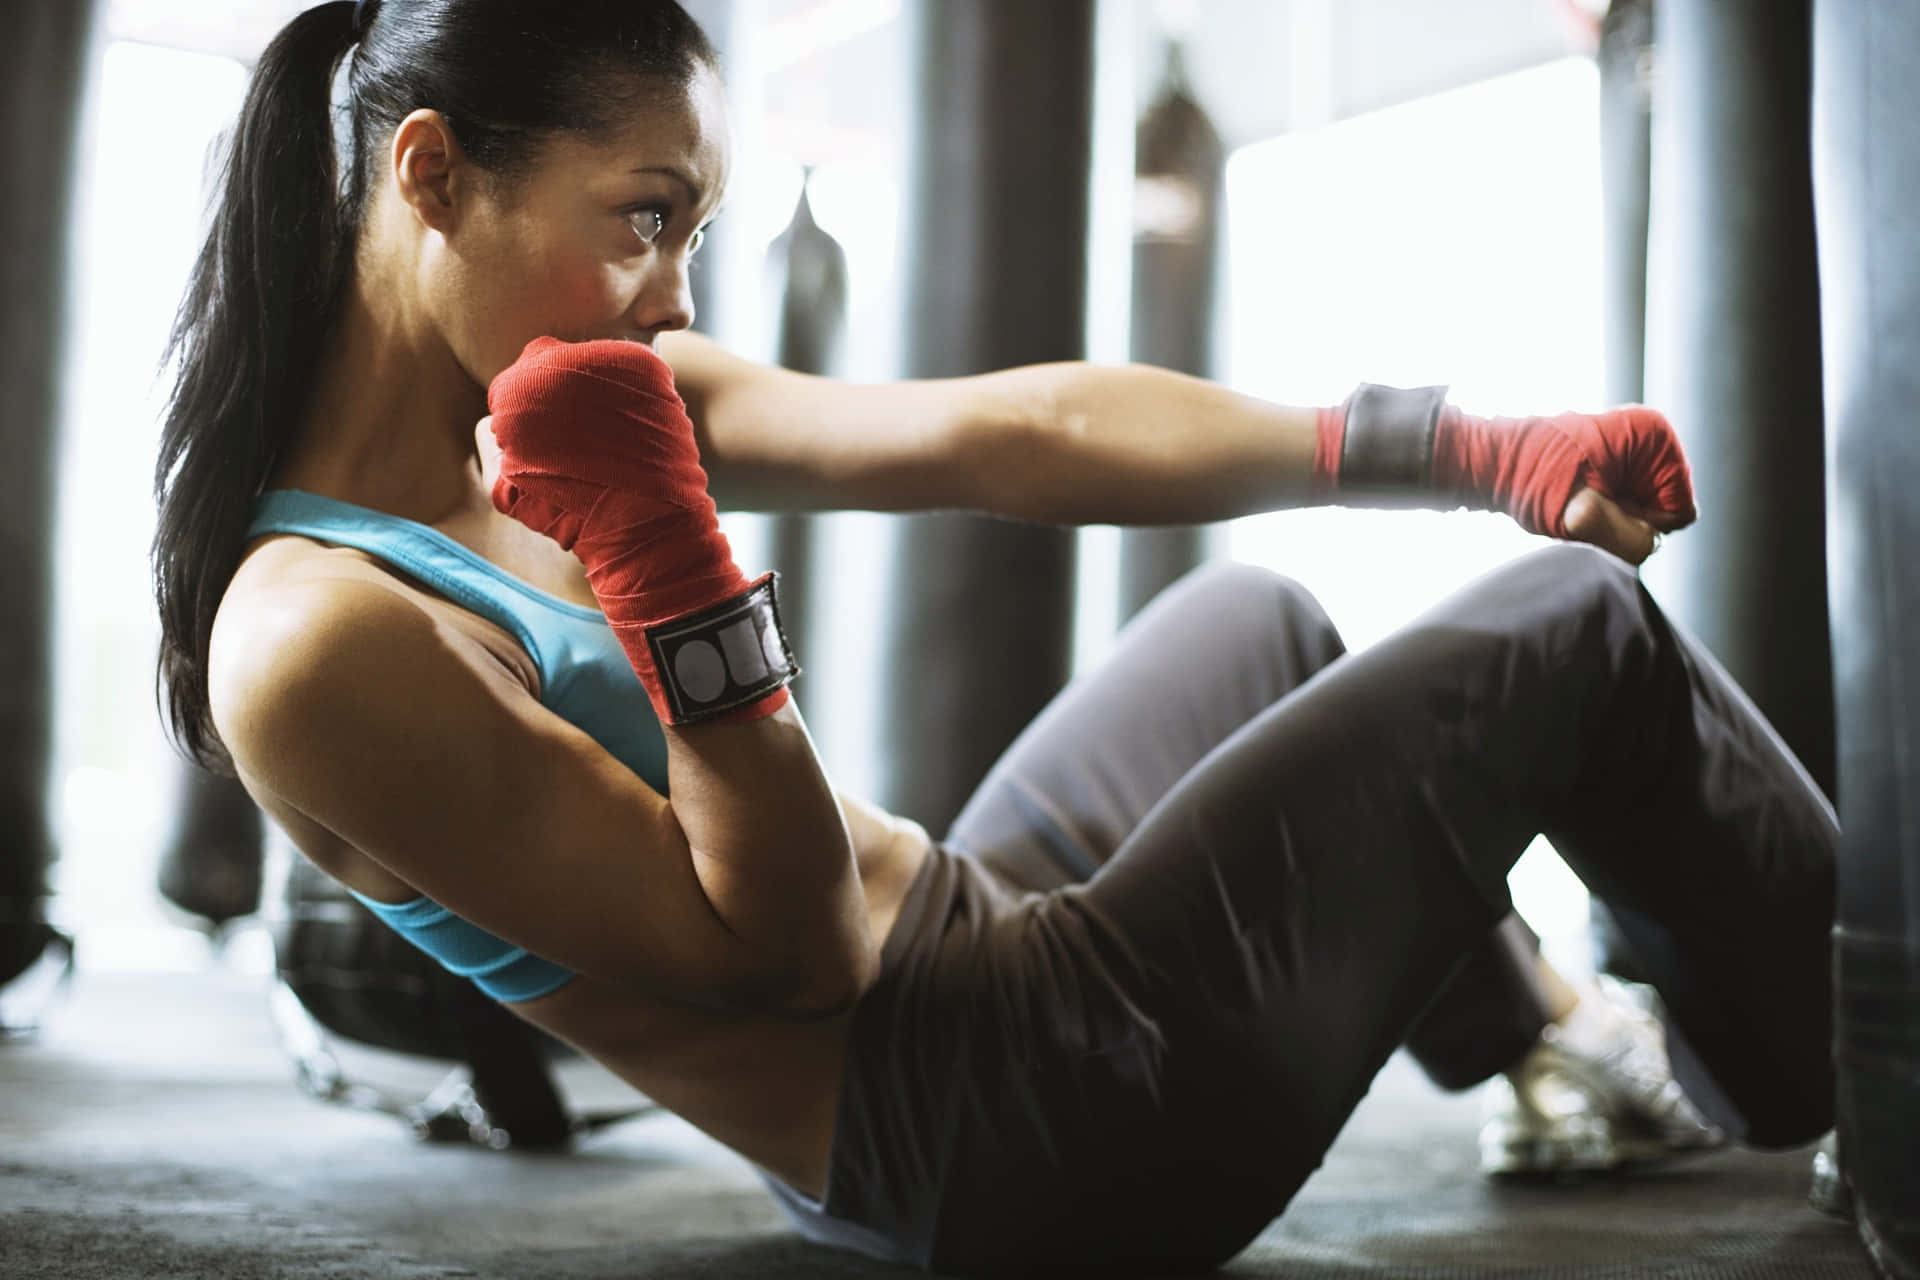 Enkvinna Tränar Boxning På Ett Gym.